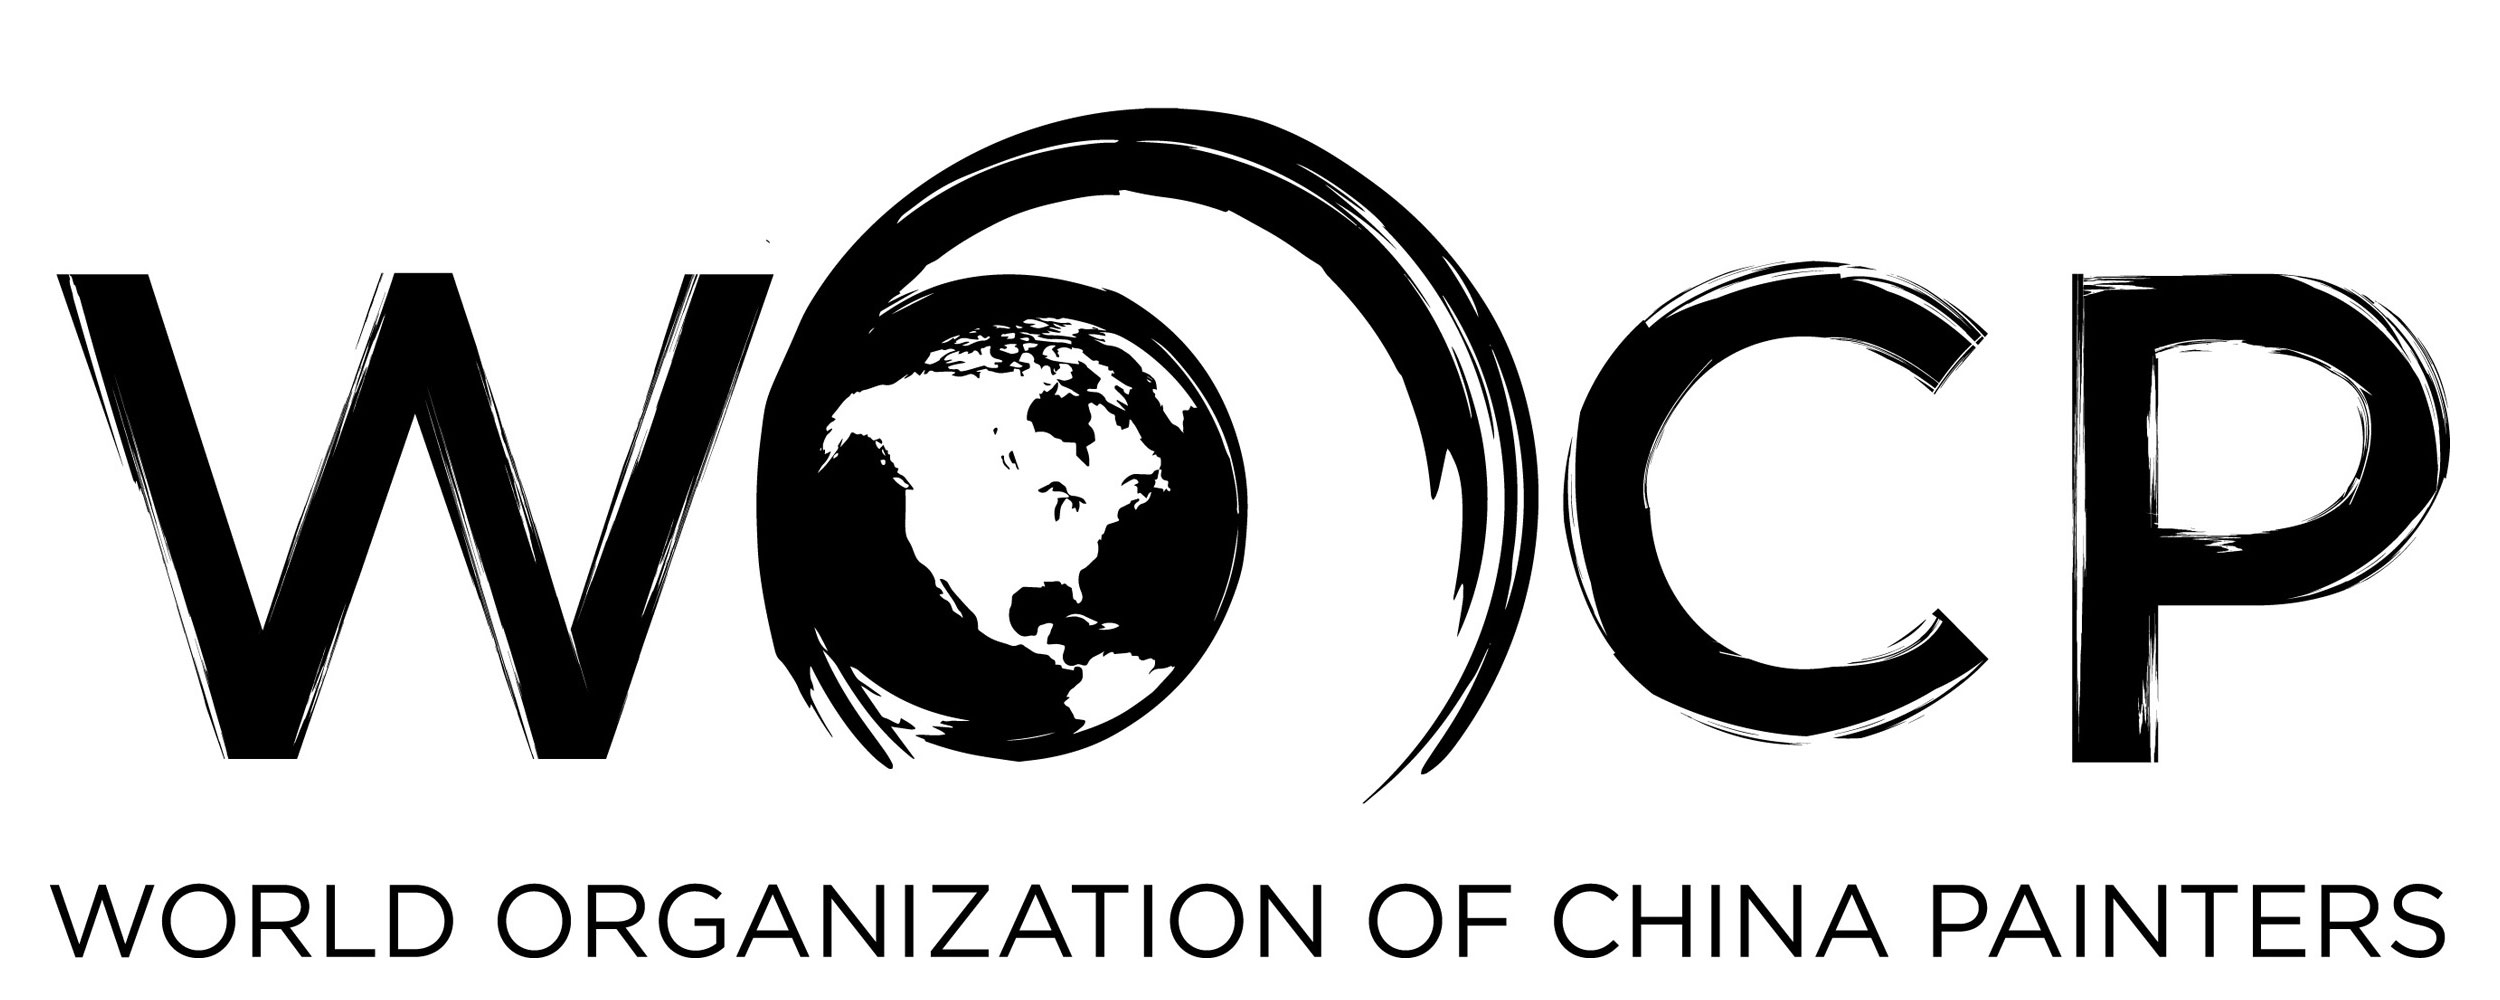 World Organization of China Painters